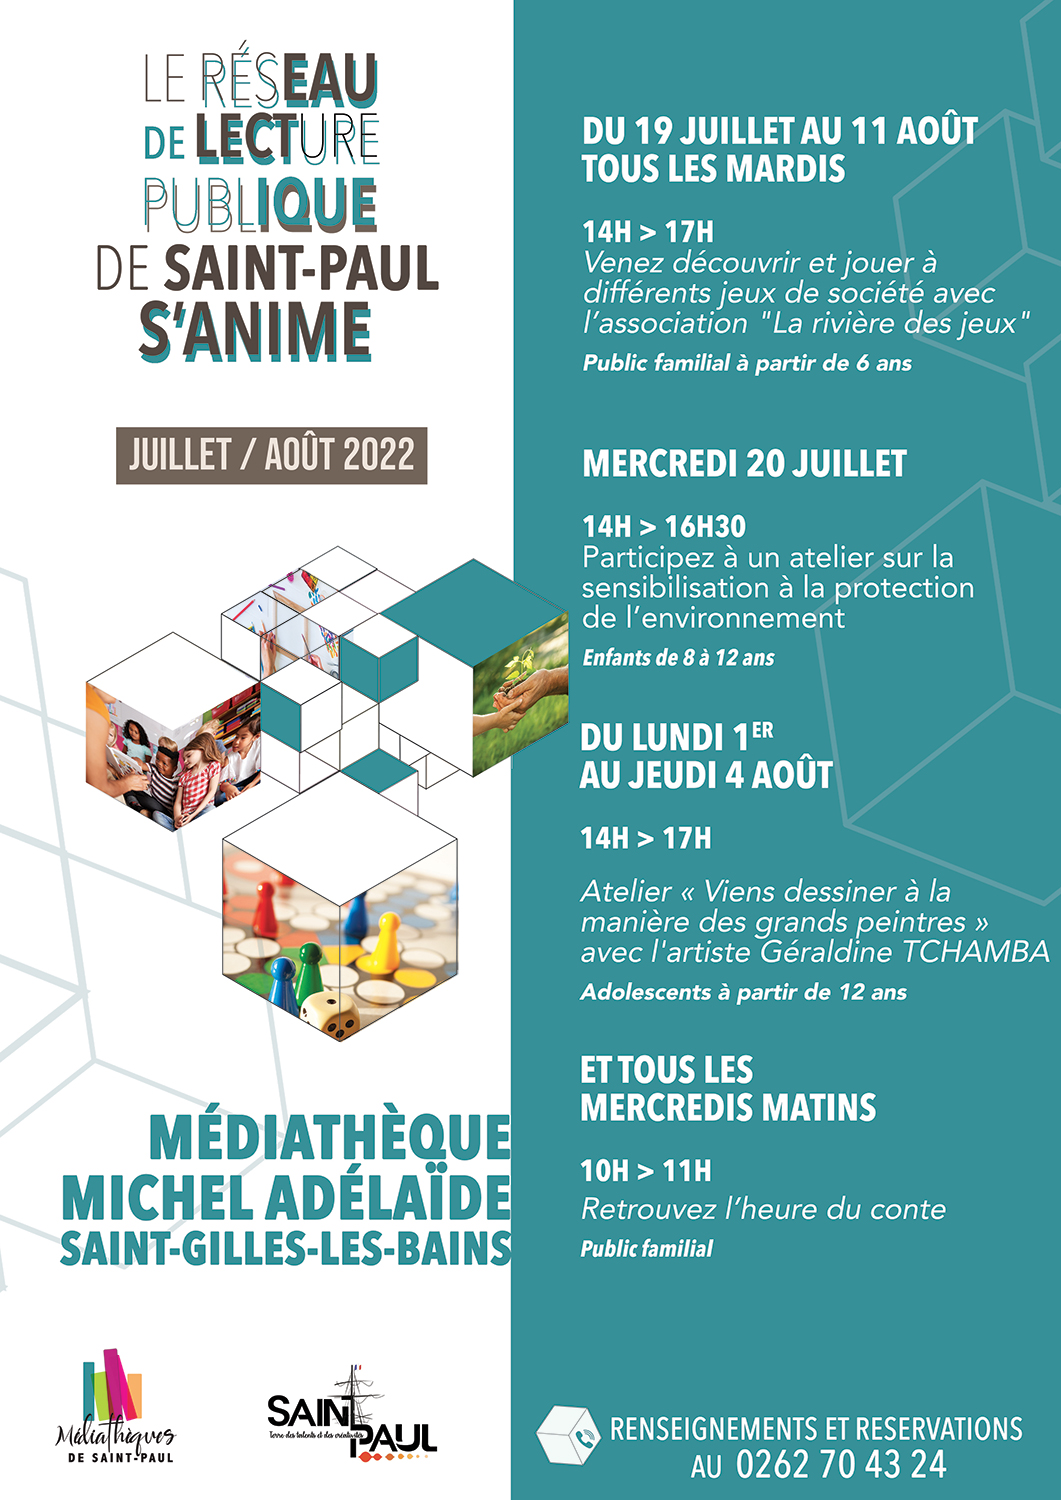 Découvrez le programme du réseau de lecture publique de Saint-Paul pour les mois de juillet/août 2022